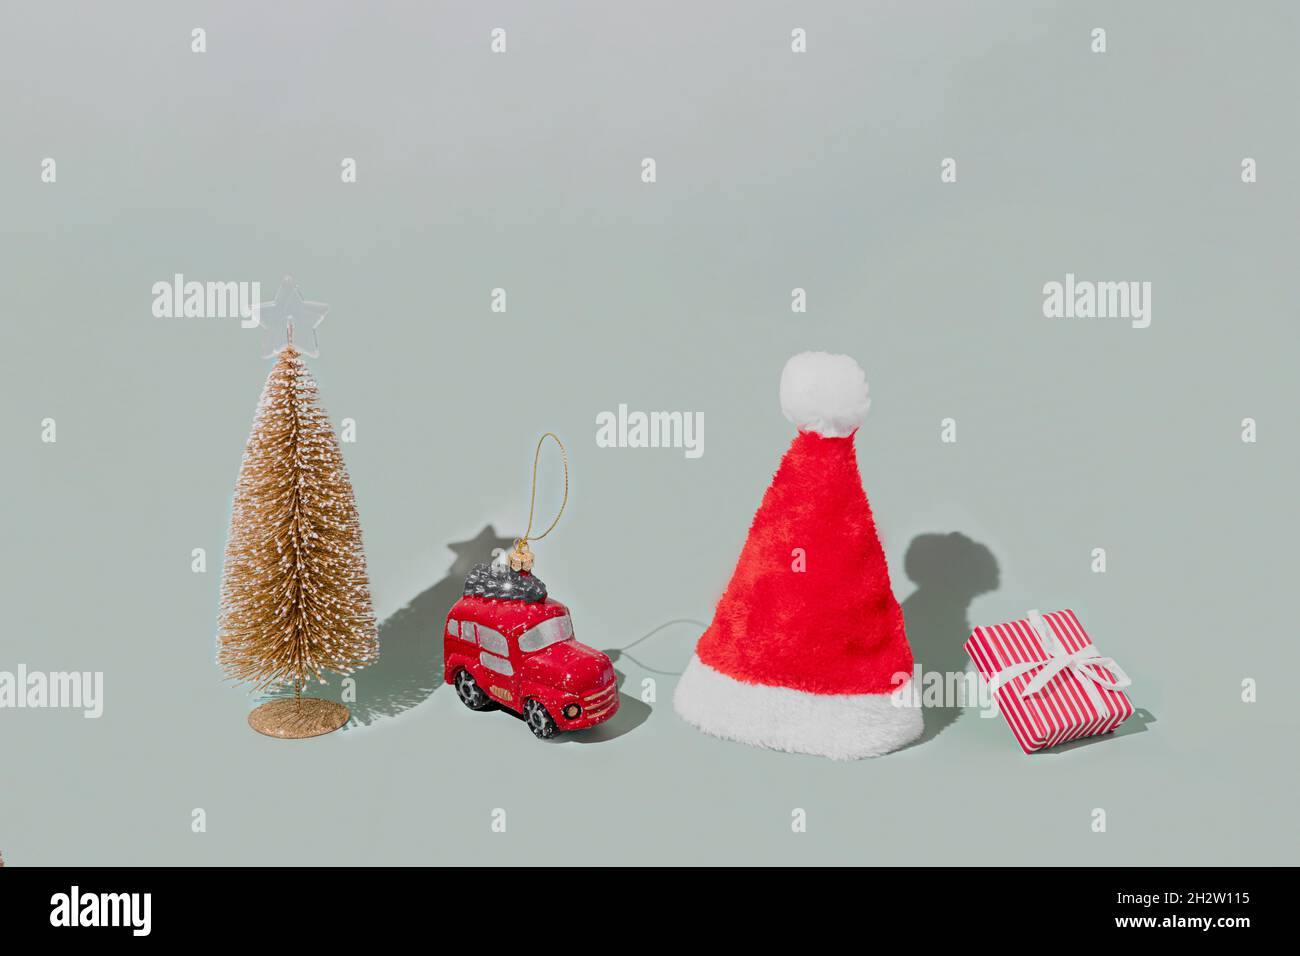 Fond gris avec objets d'attribut de symbole de Noël ou de nouvel an et concept d'éléments symboliques.Boîte cadeau rose avec ruban, petite voiture de taxi rouge Banque D'Images